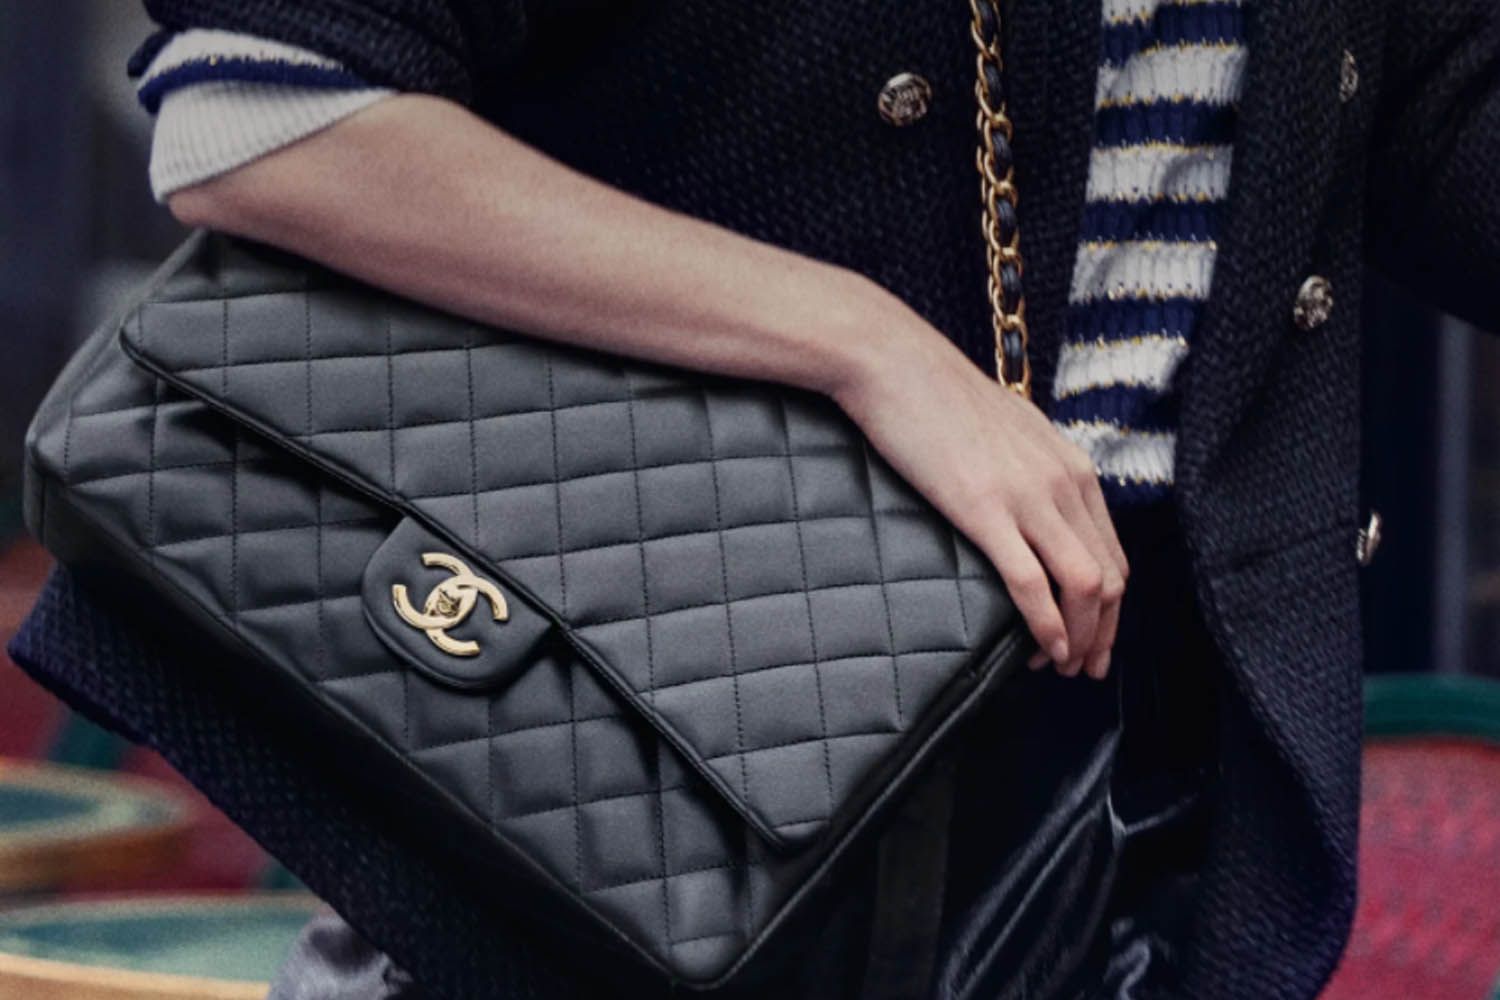 Comprar el bolso de Chanel clásico 2.55 que siempre de precio